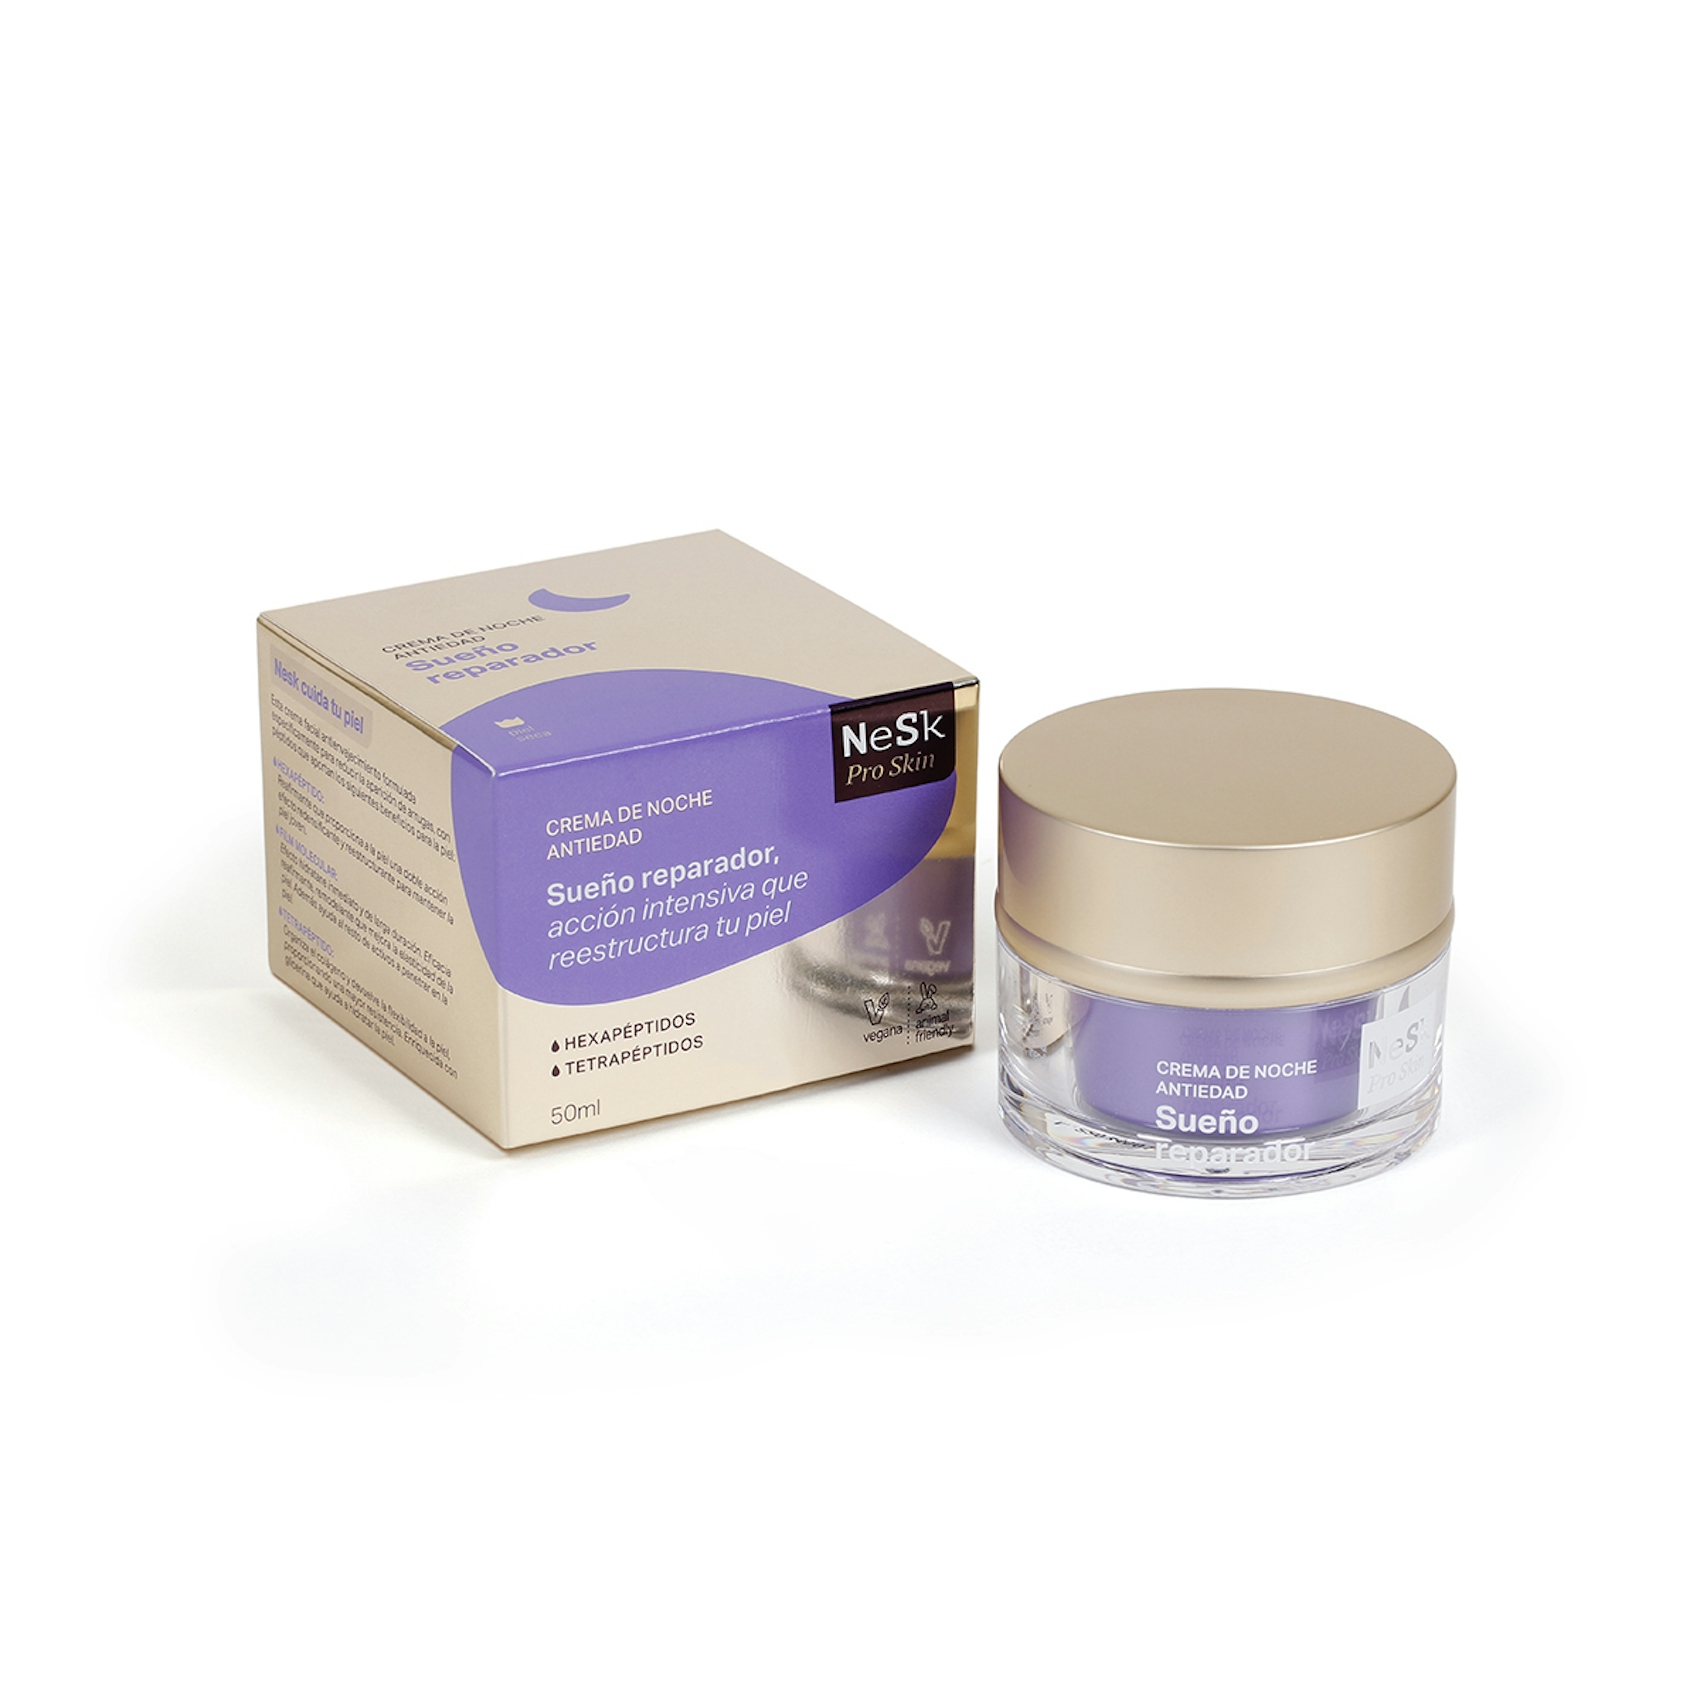 Crema facial cuidado anti-edad tratamiento noche NeSk Pro Skin  50 ml